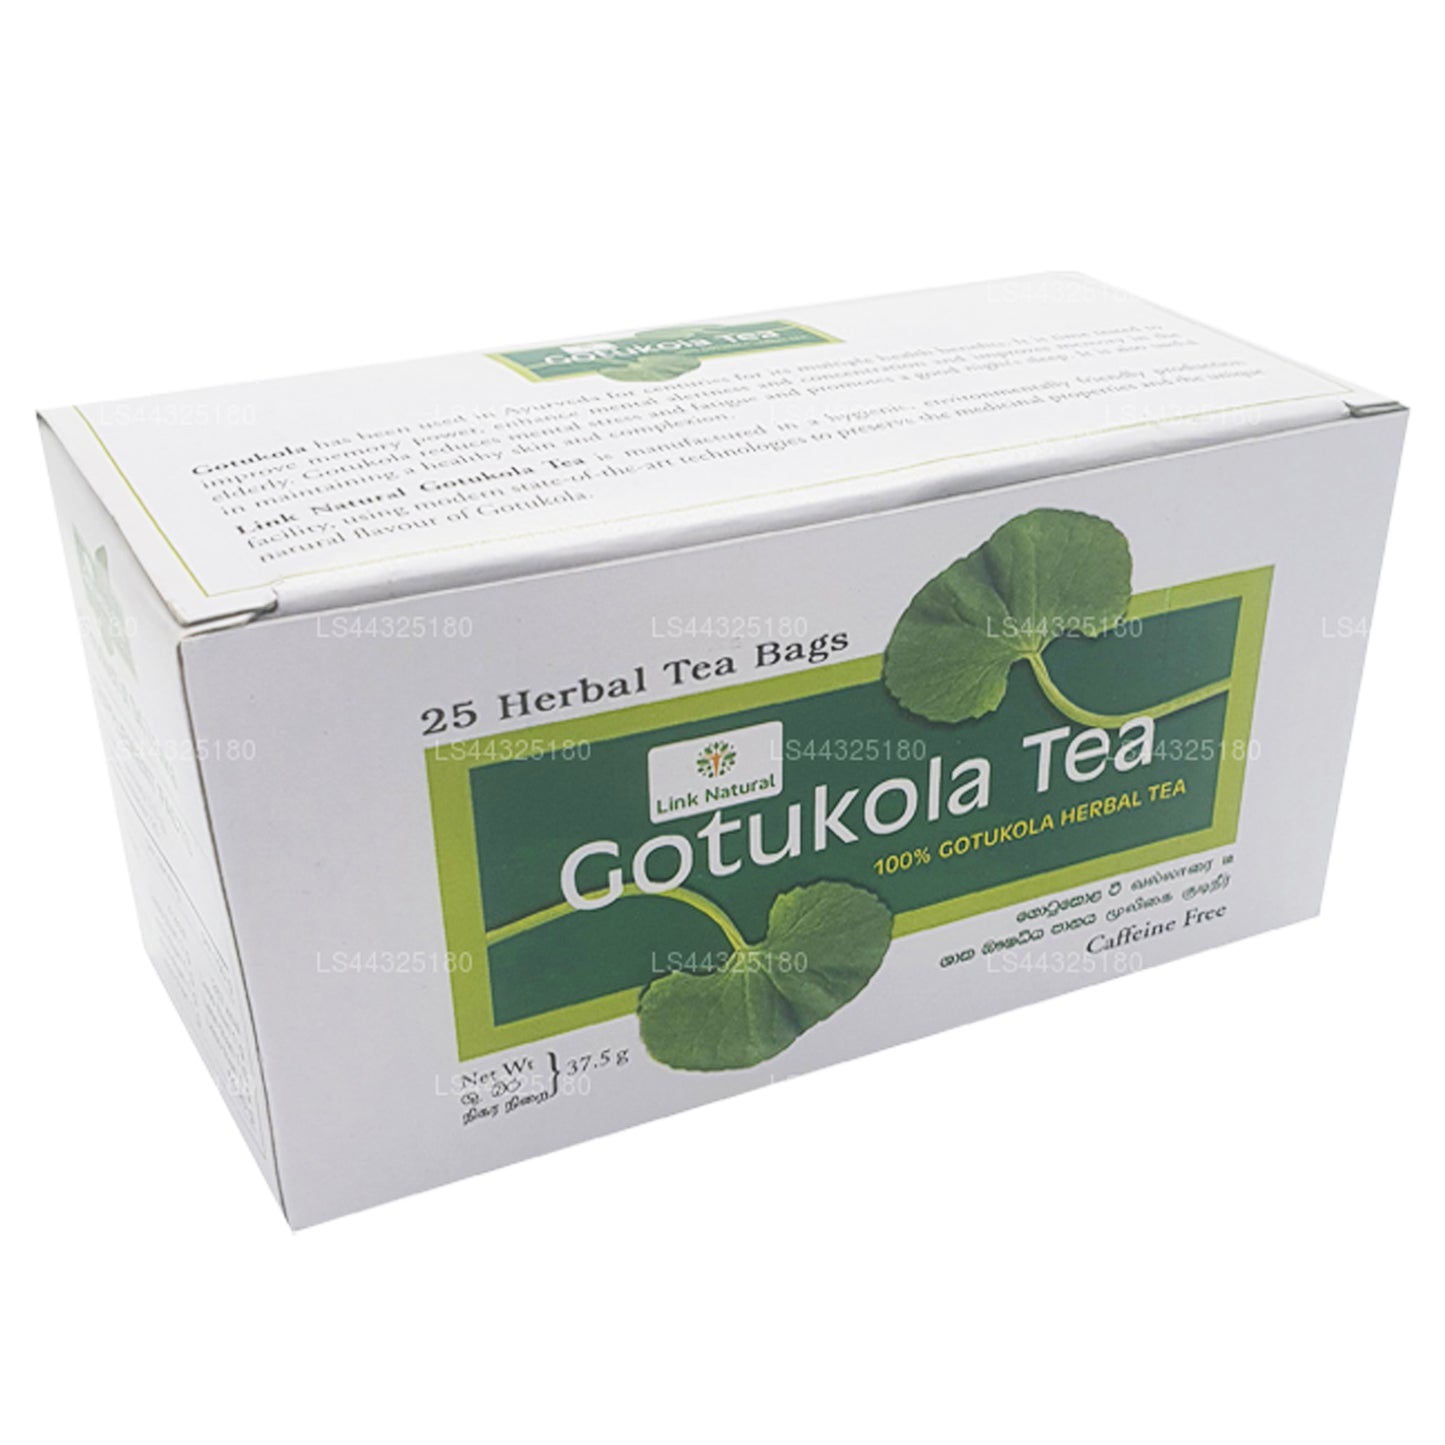 Link Natural Gotukola Herbal Tea (37.5g) 25 Tea Bags